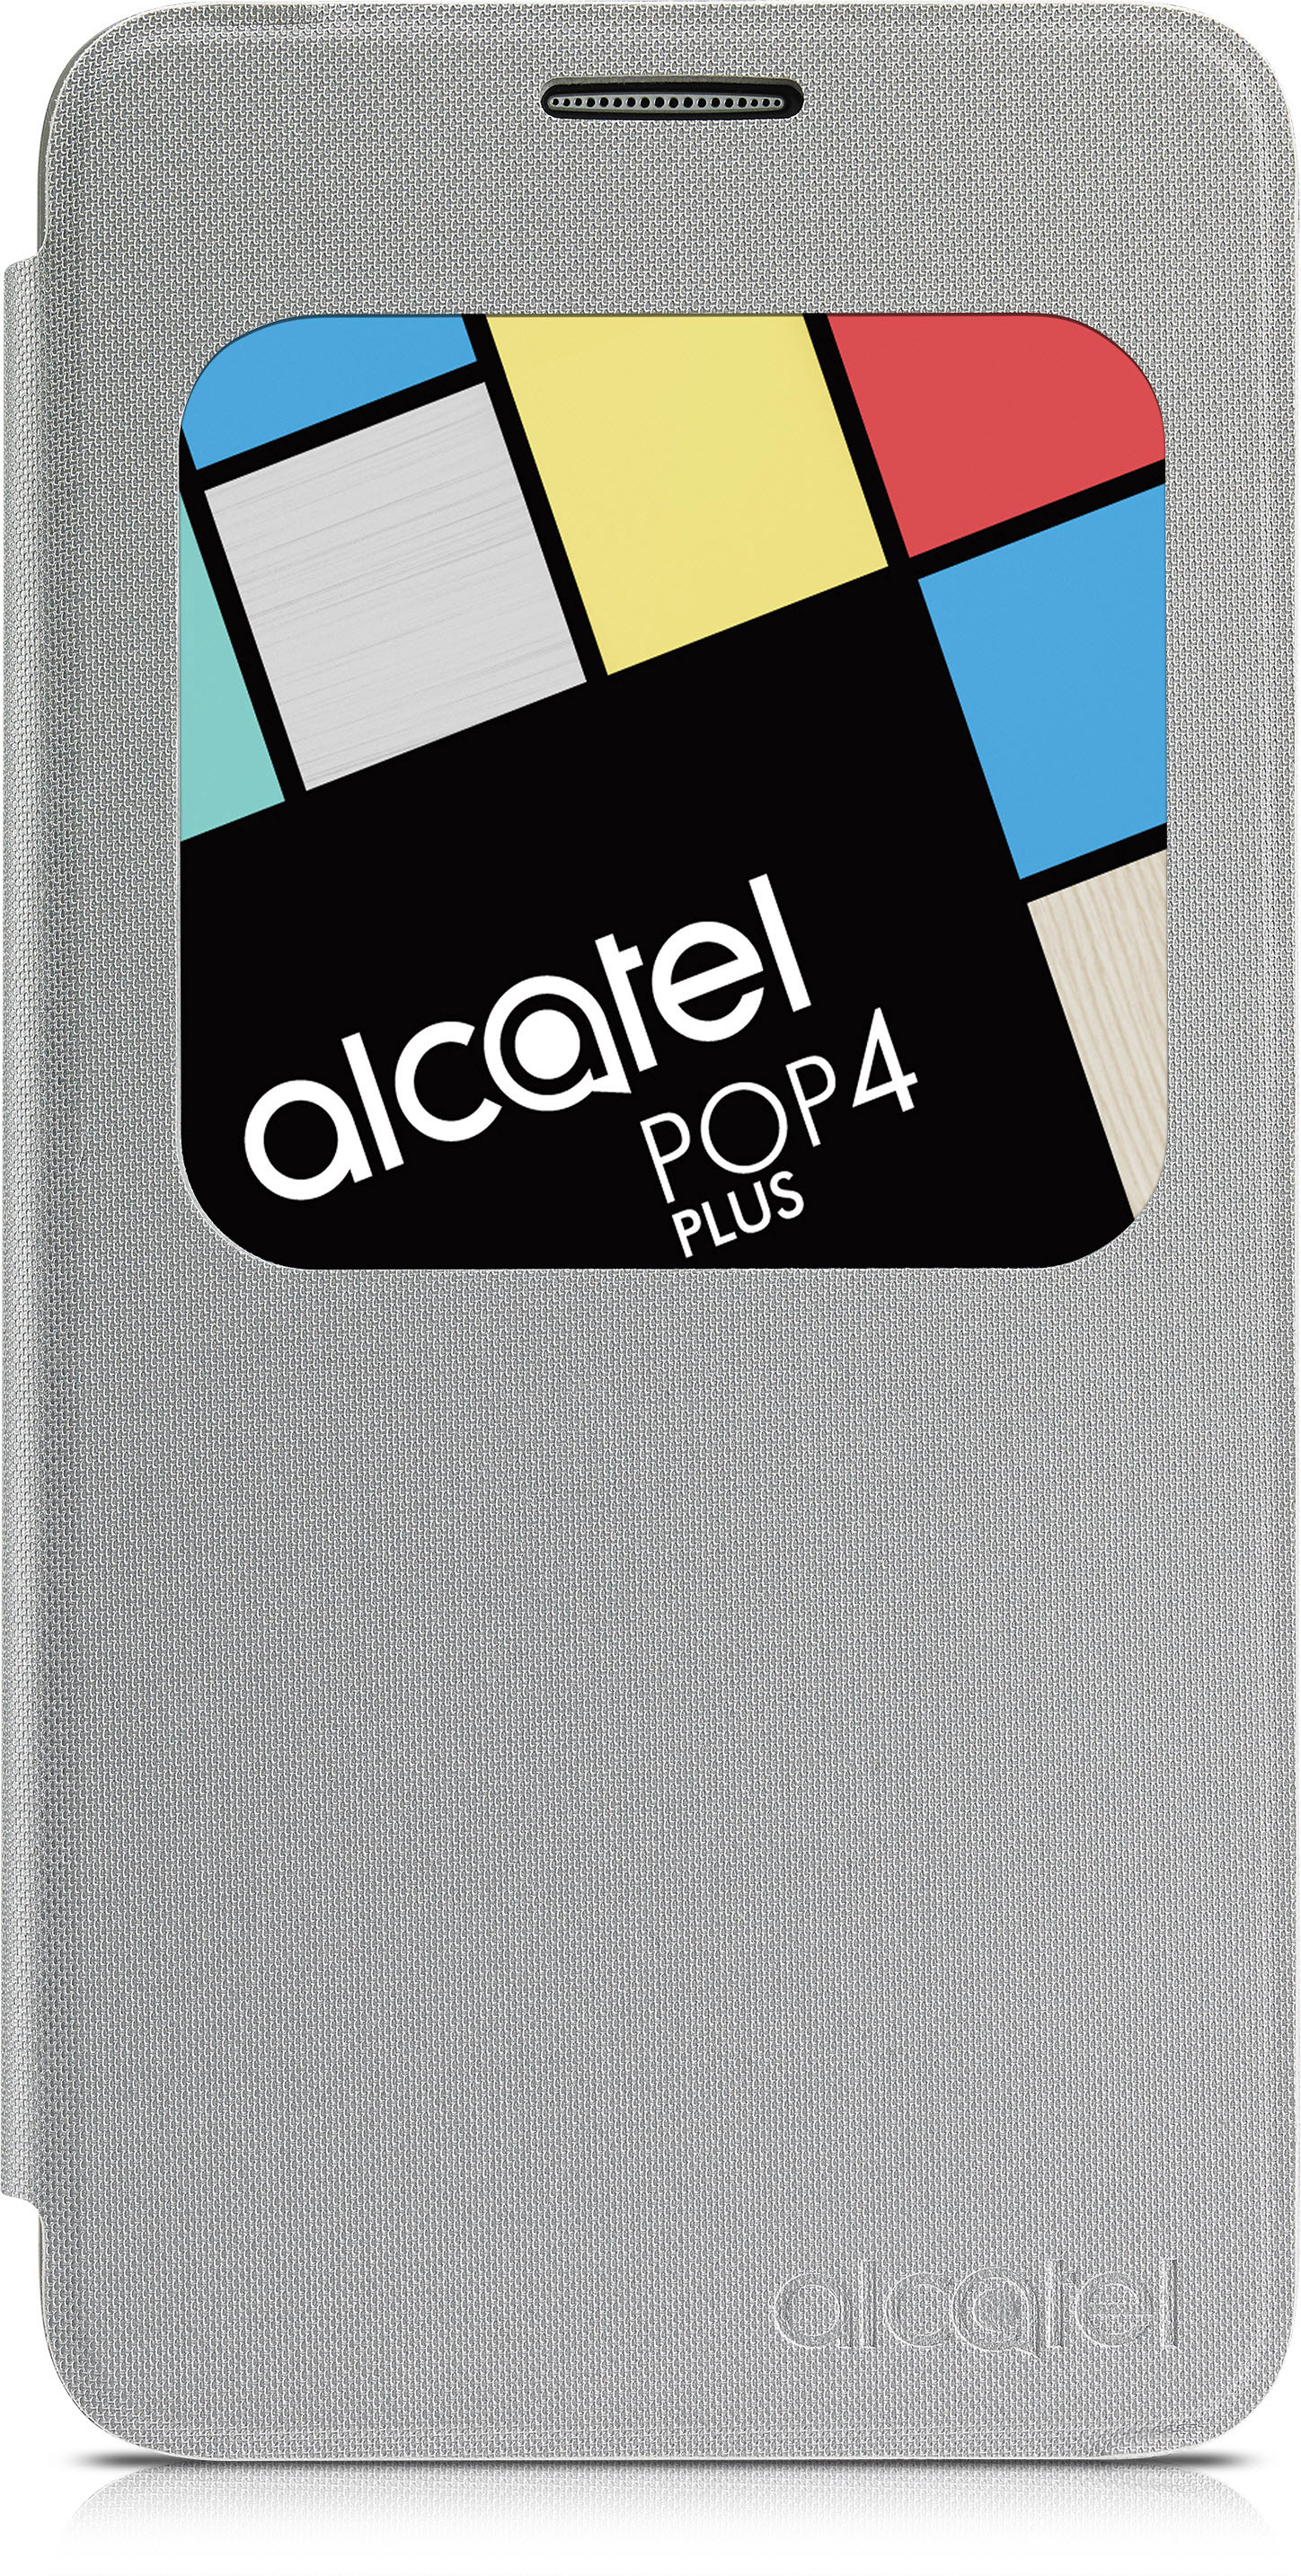 ALCATEL AF5056, Bookcover, 4+, POP Silber Alcatel